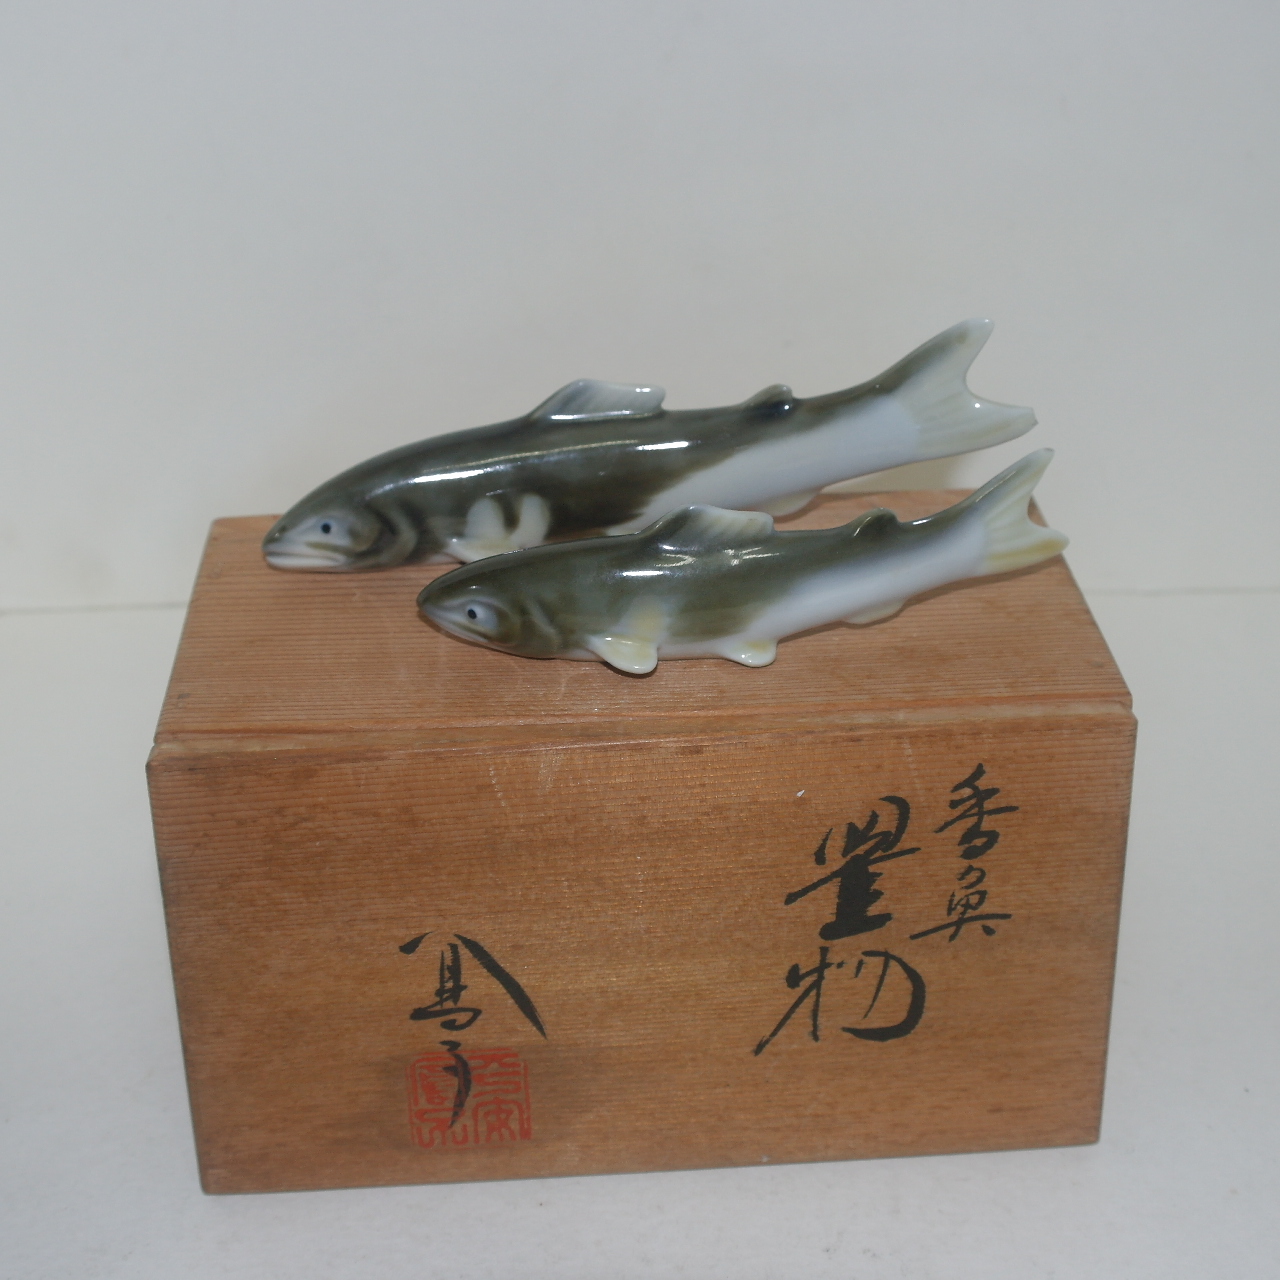 작가의 작품인 철화백자 도자기 물고기 조각상